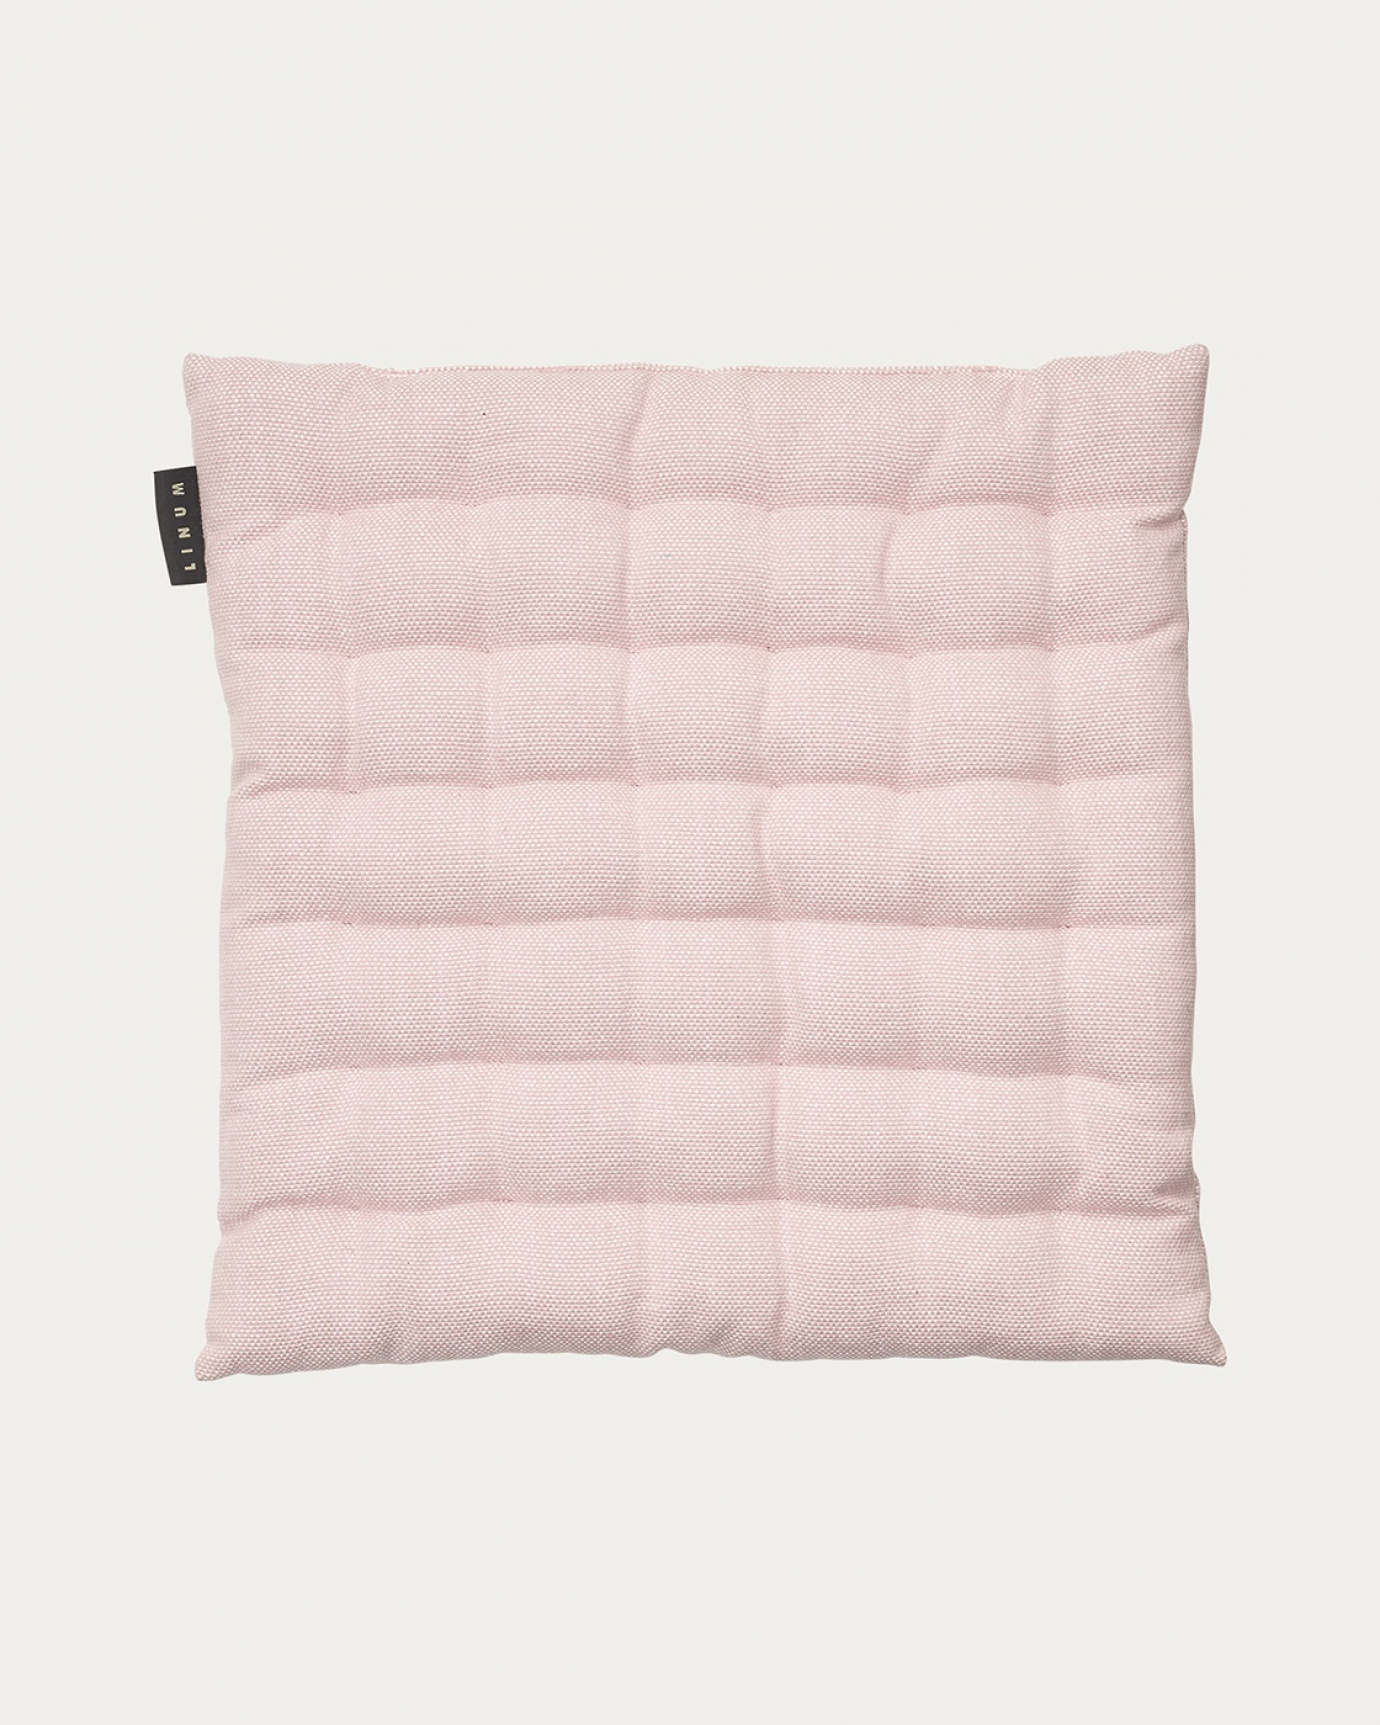 Image du produit coussin de chaise PEPPER rose poudré en coton doux avec rembourrage en polyester recyclé de LINUM DESIGN. Taille 40 x 40 cm.